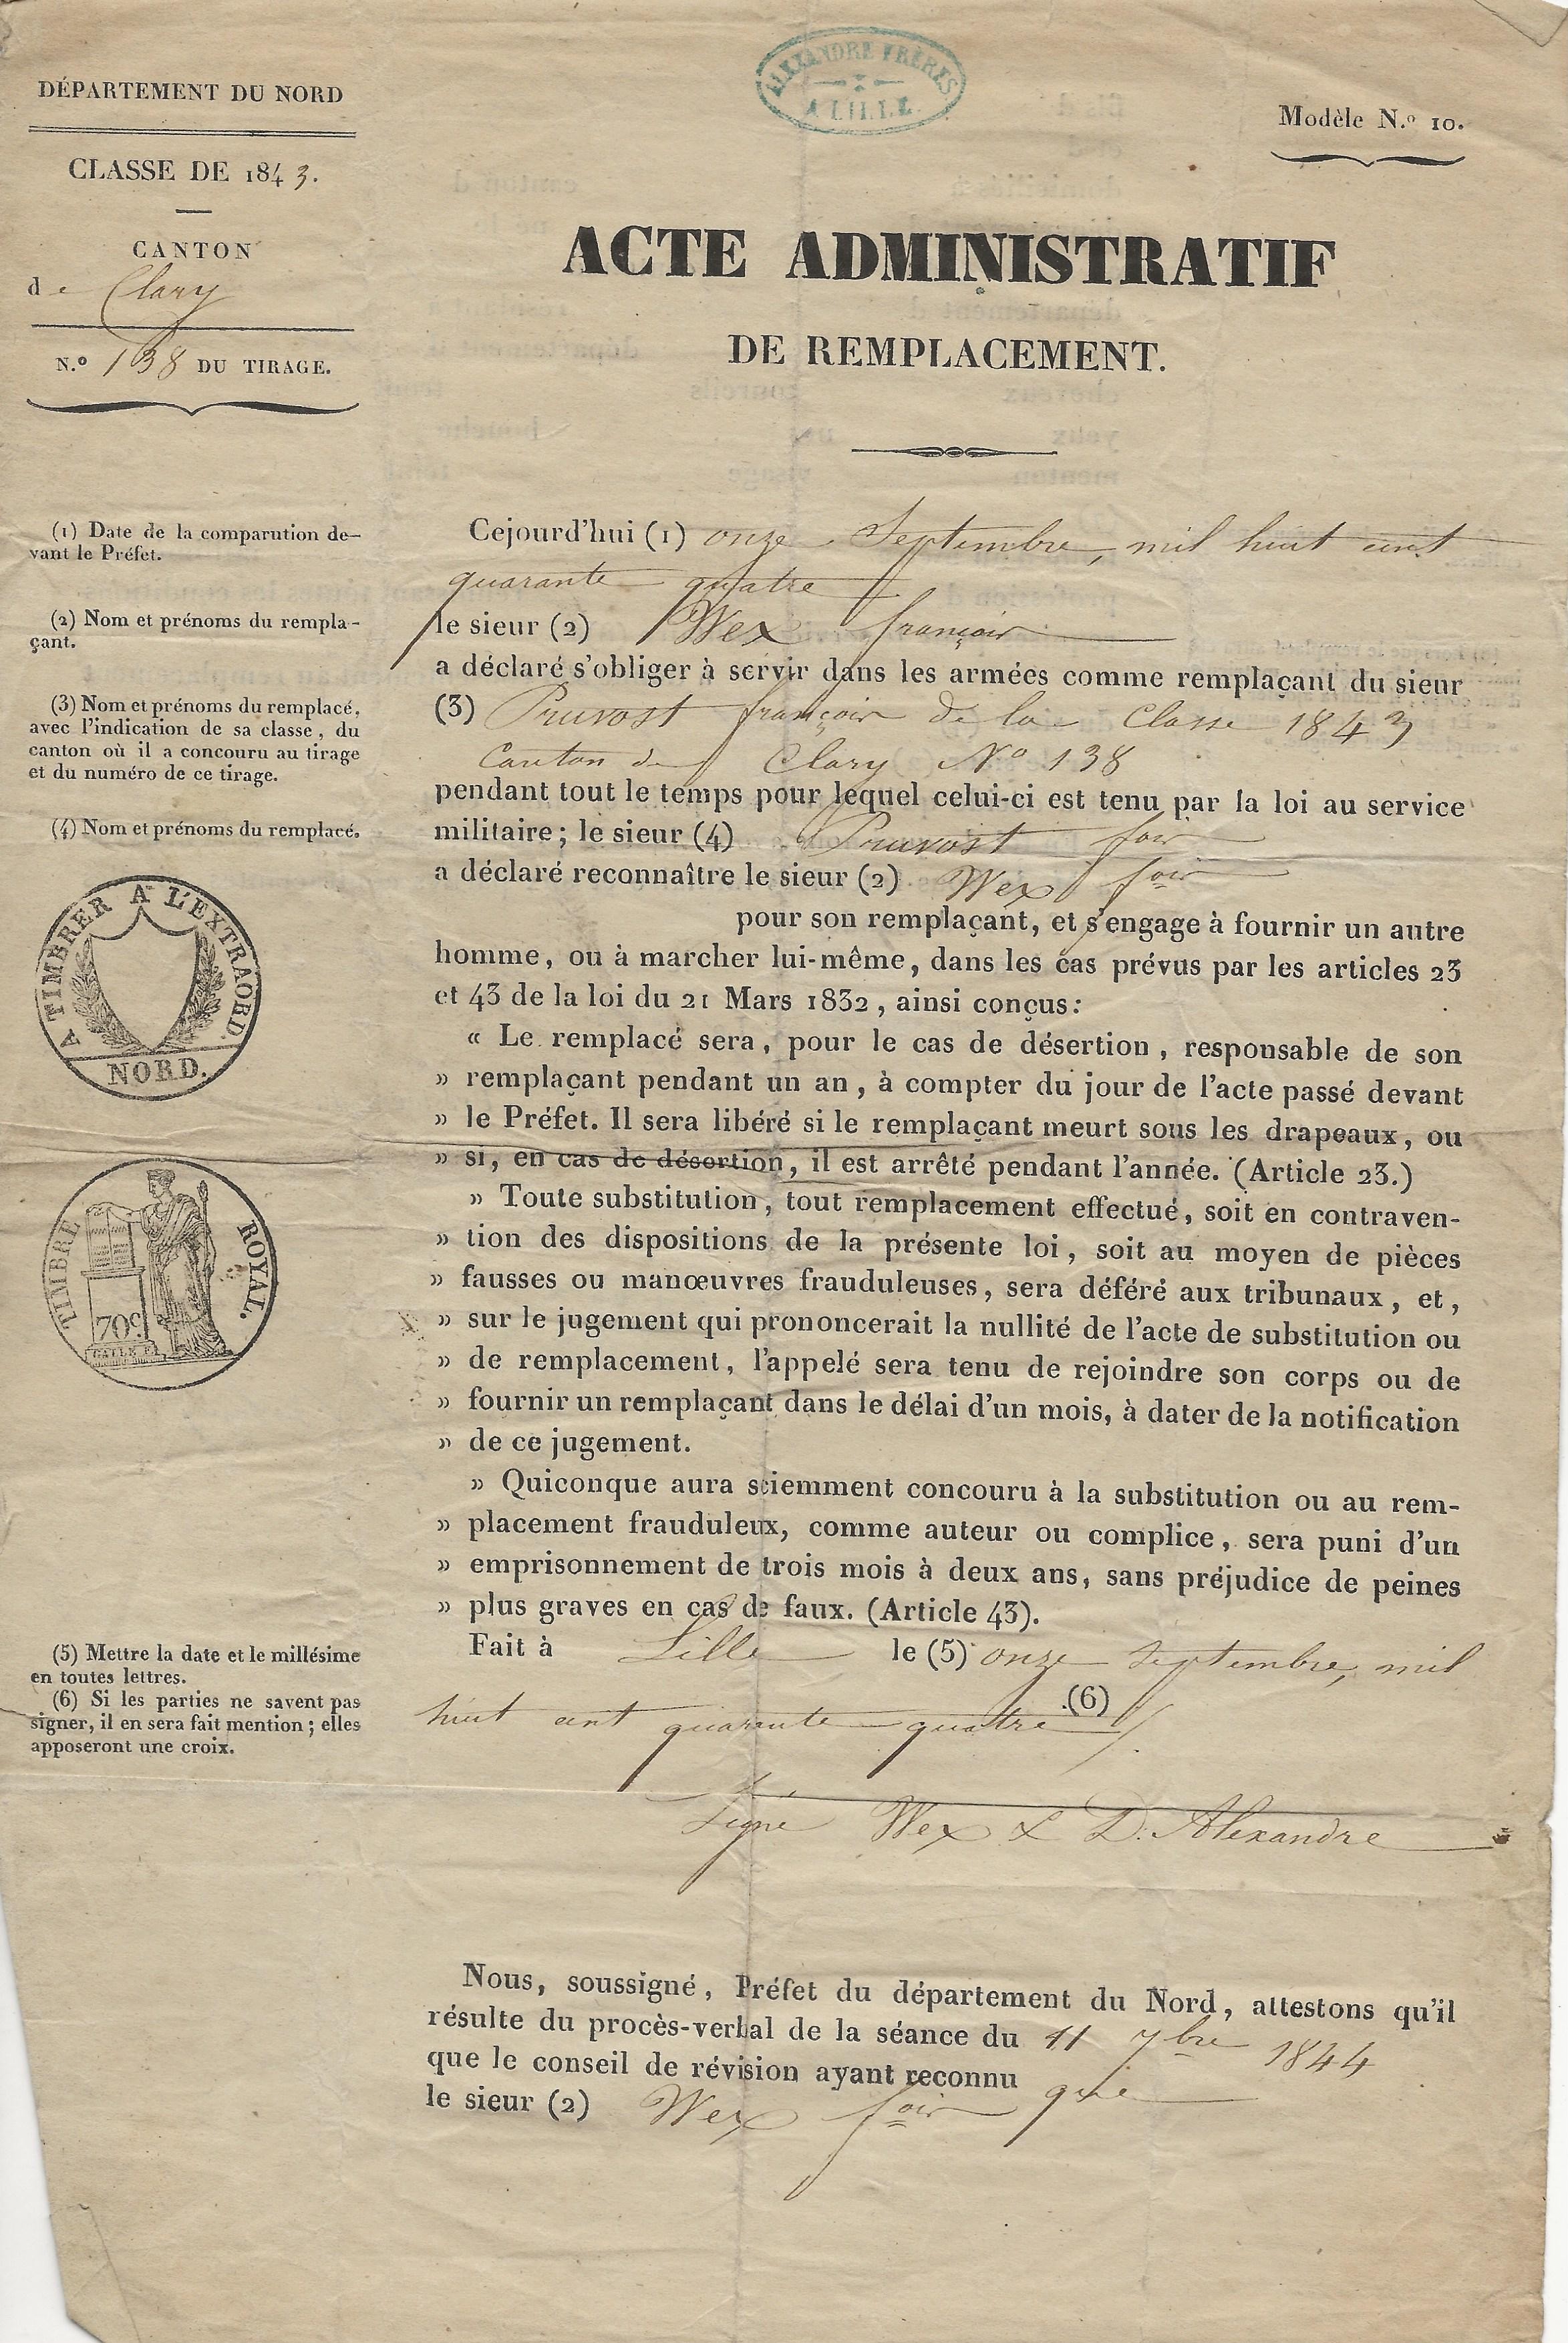 1844 acte de remplacement de francois pruvot 001